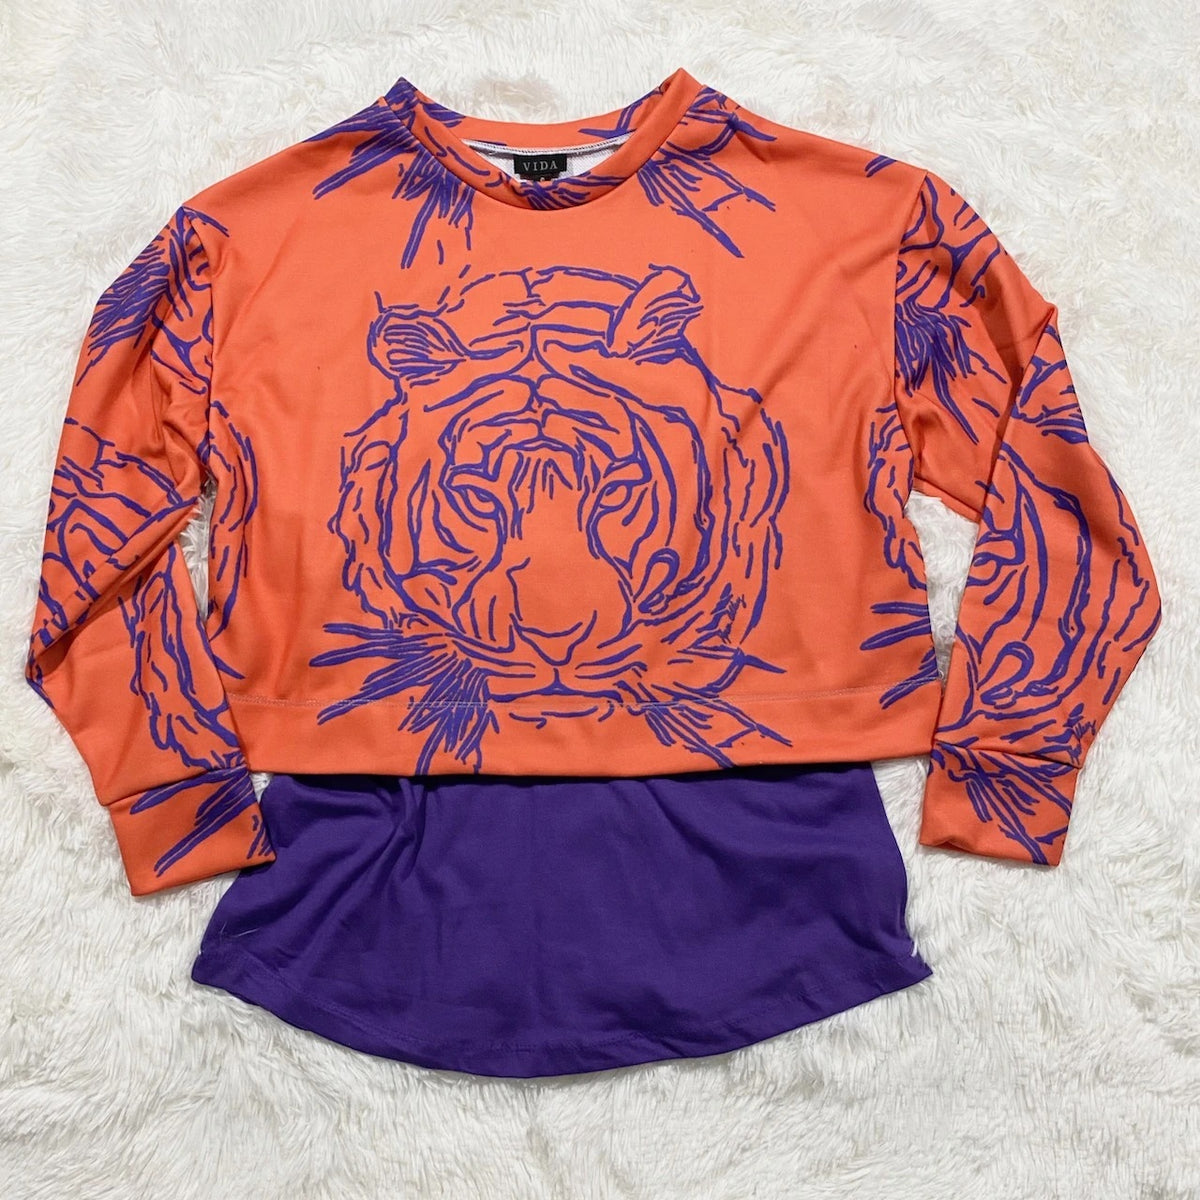 Purple Knickerbocker Cropped Shirt Print Karen Alley with Orange - Mr. Tiger